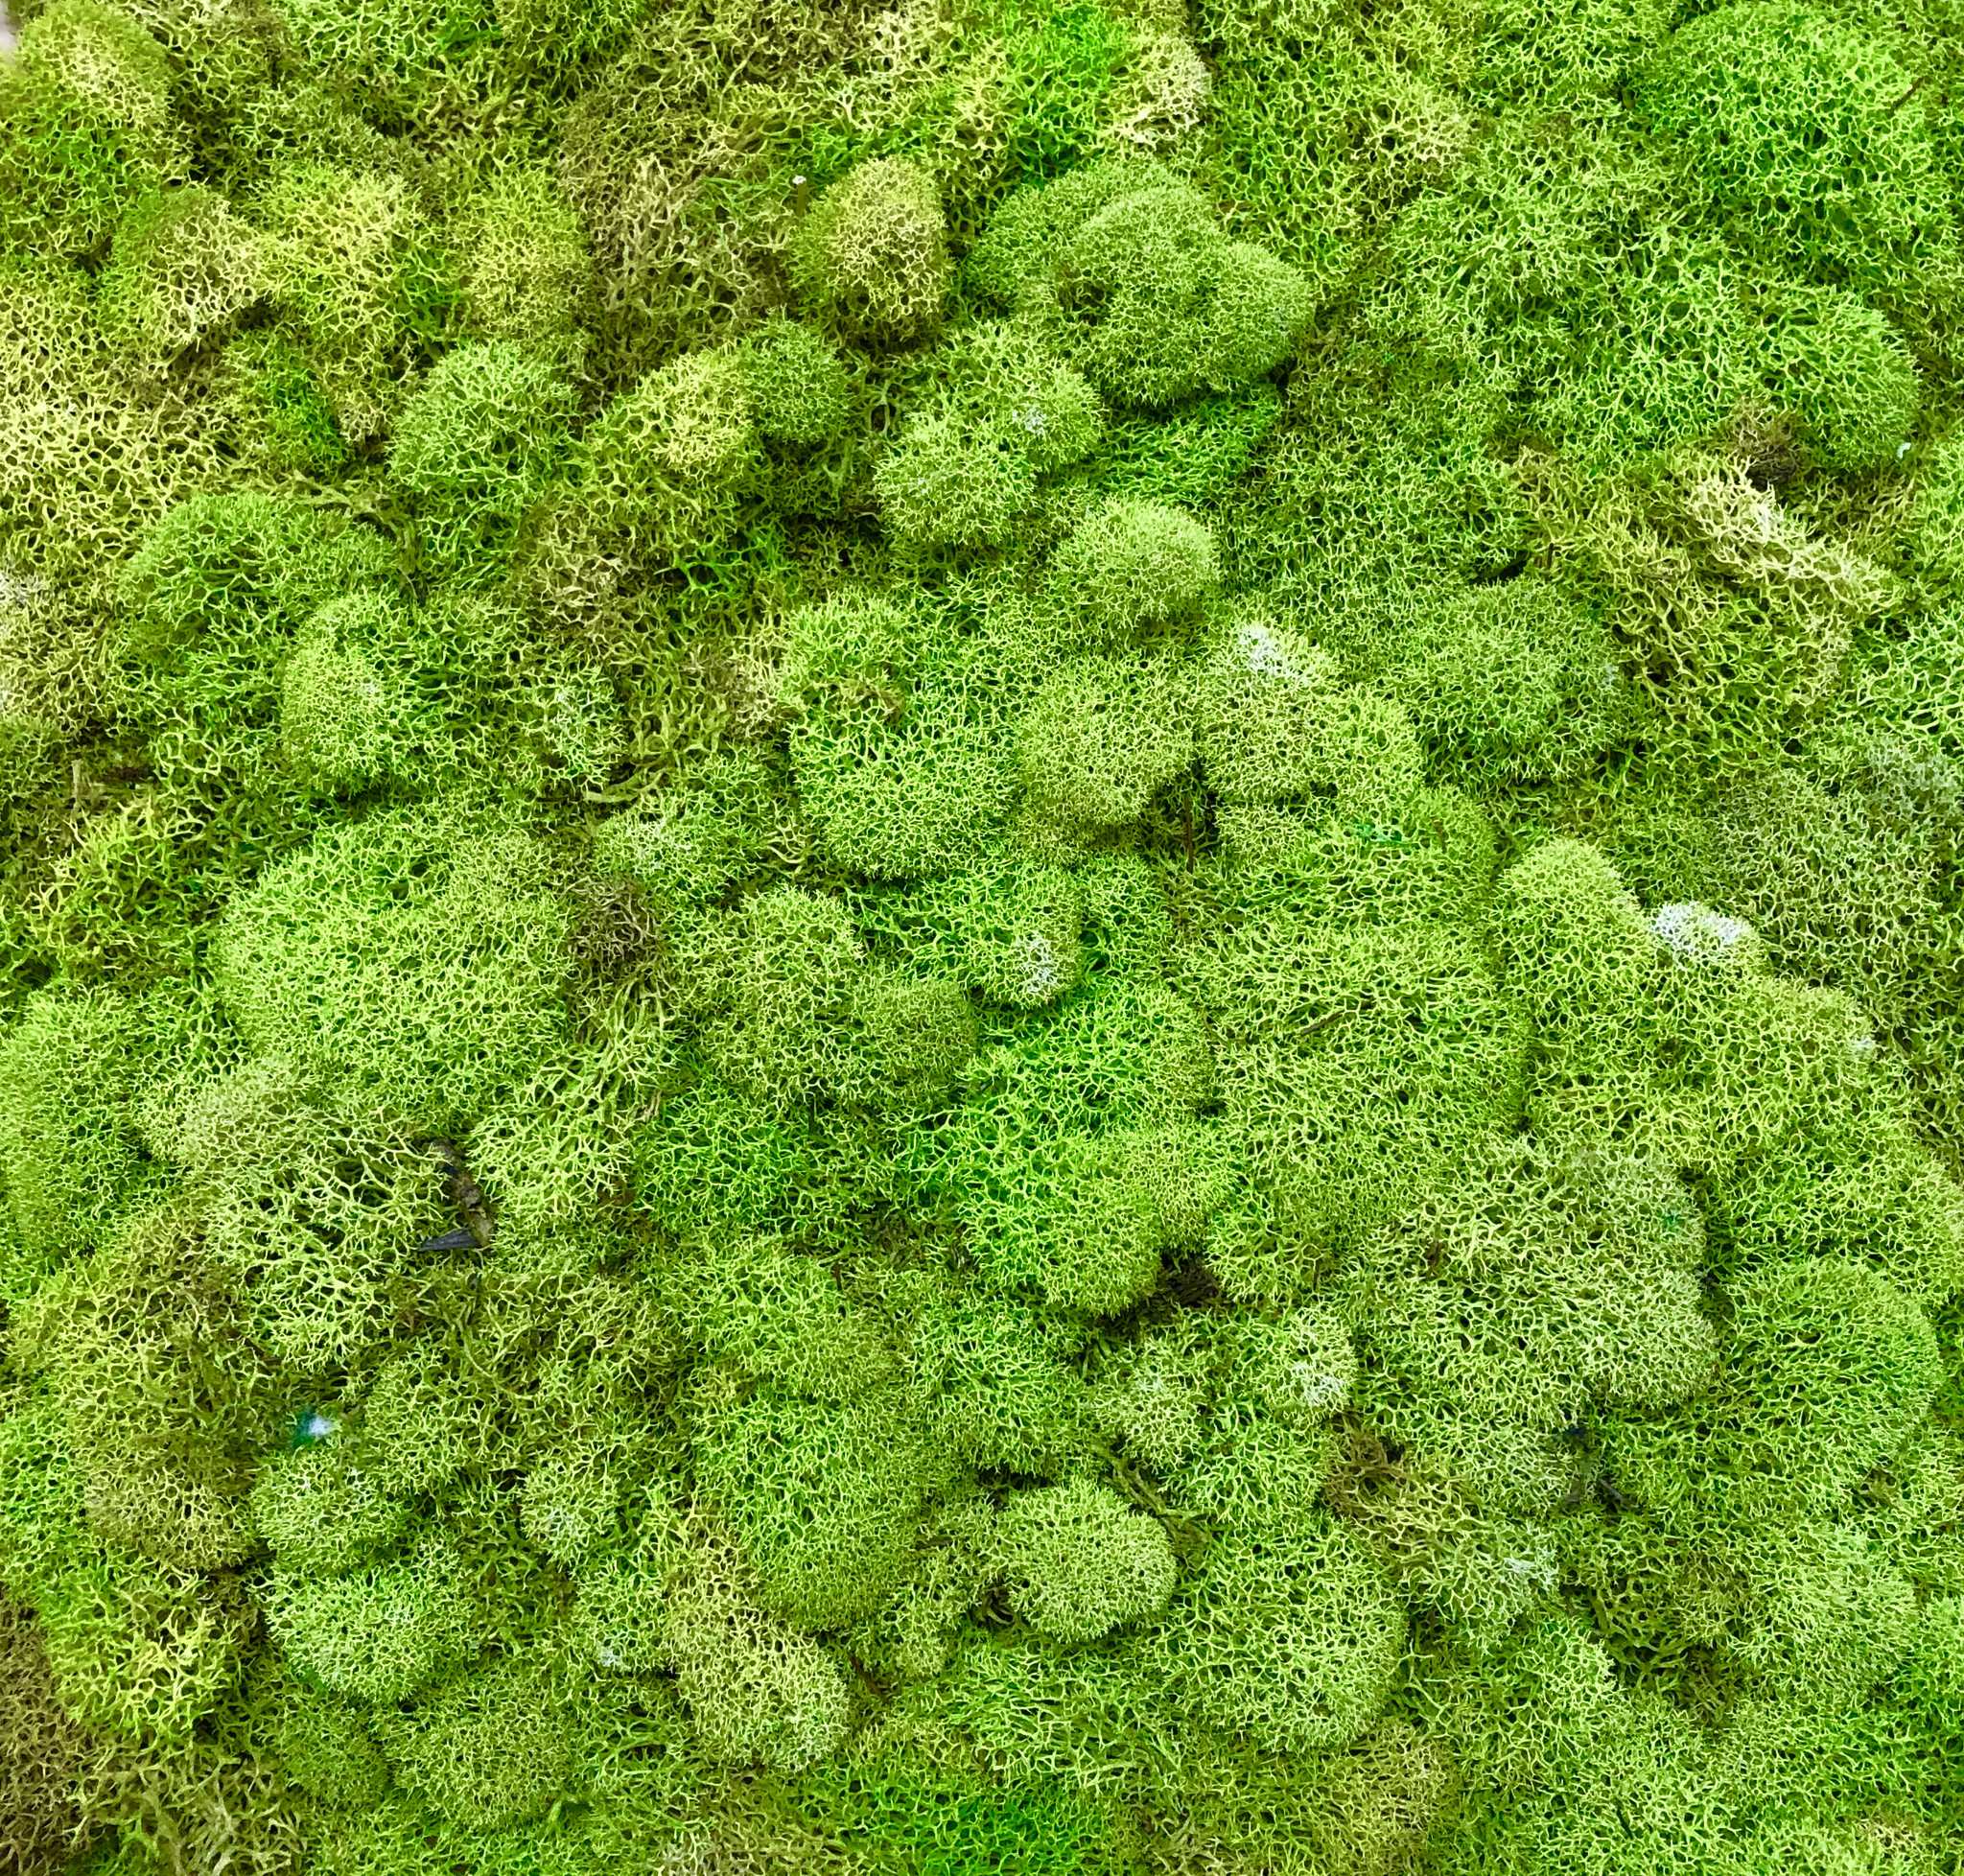  Bulk Moss